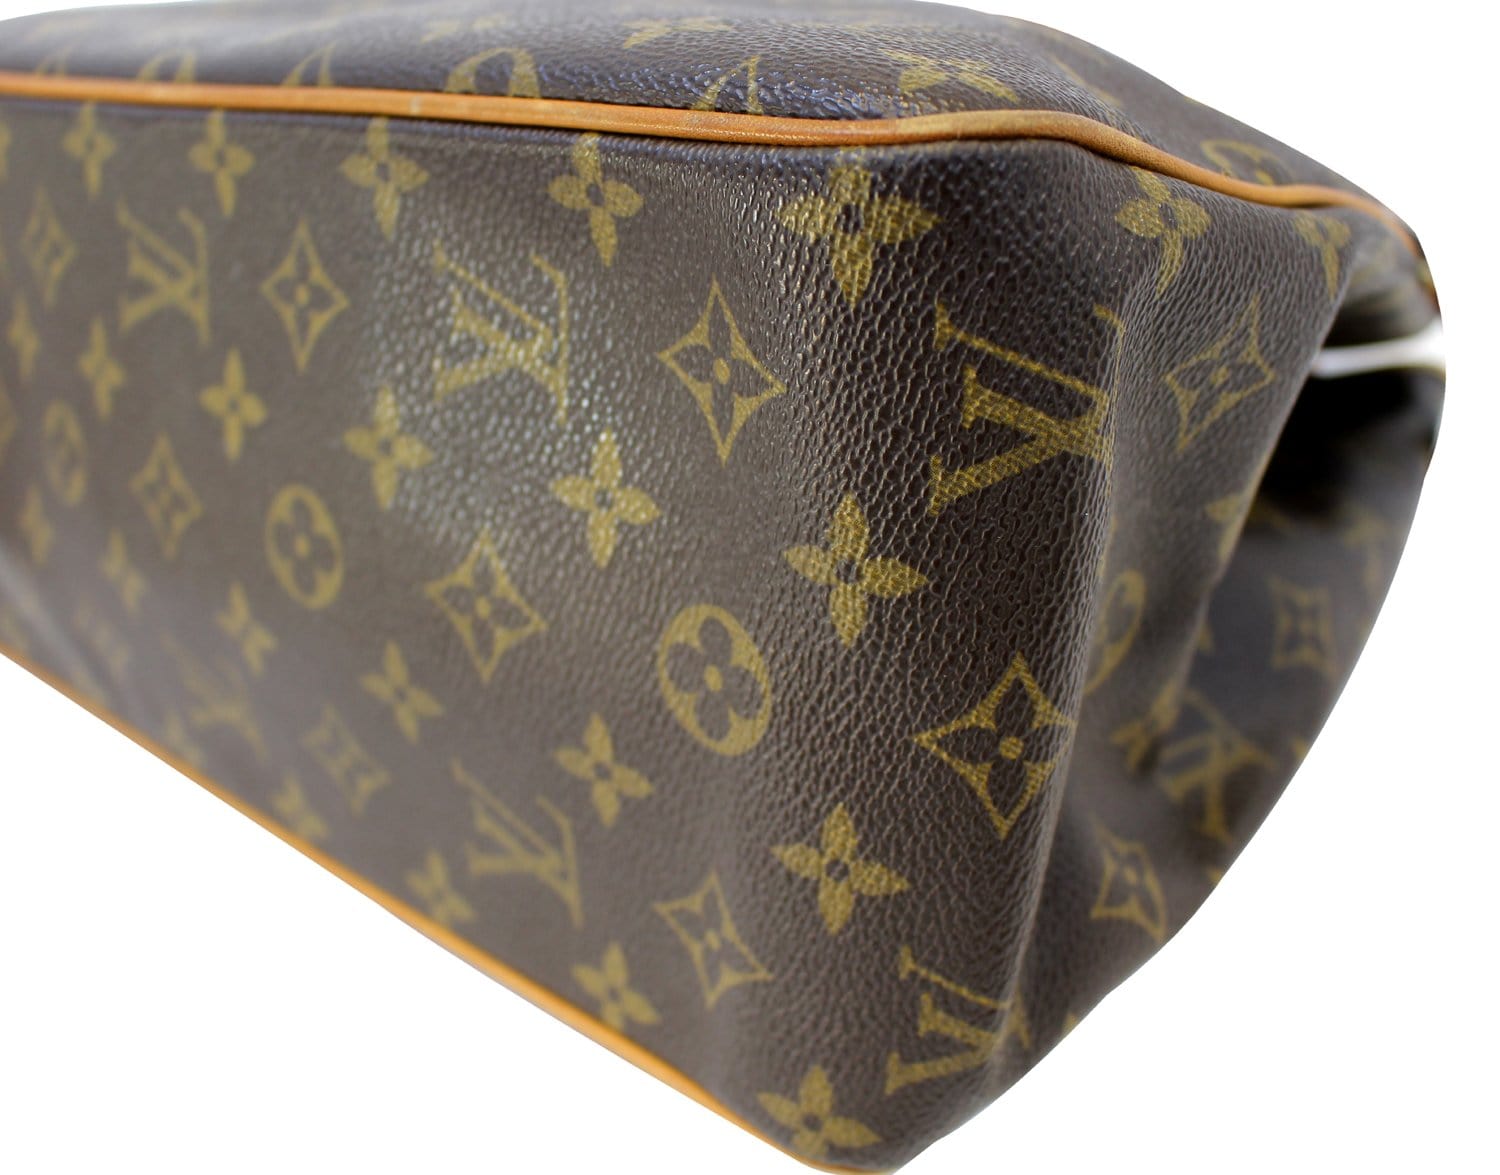 Louis Vuitton Batignolles Horizontal Shoulder Bag for Sale in Houston, TX -  OfferUp